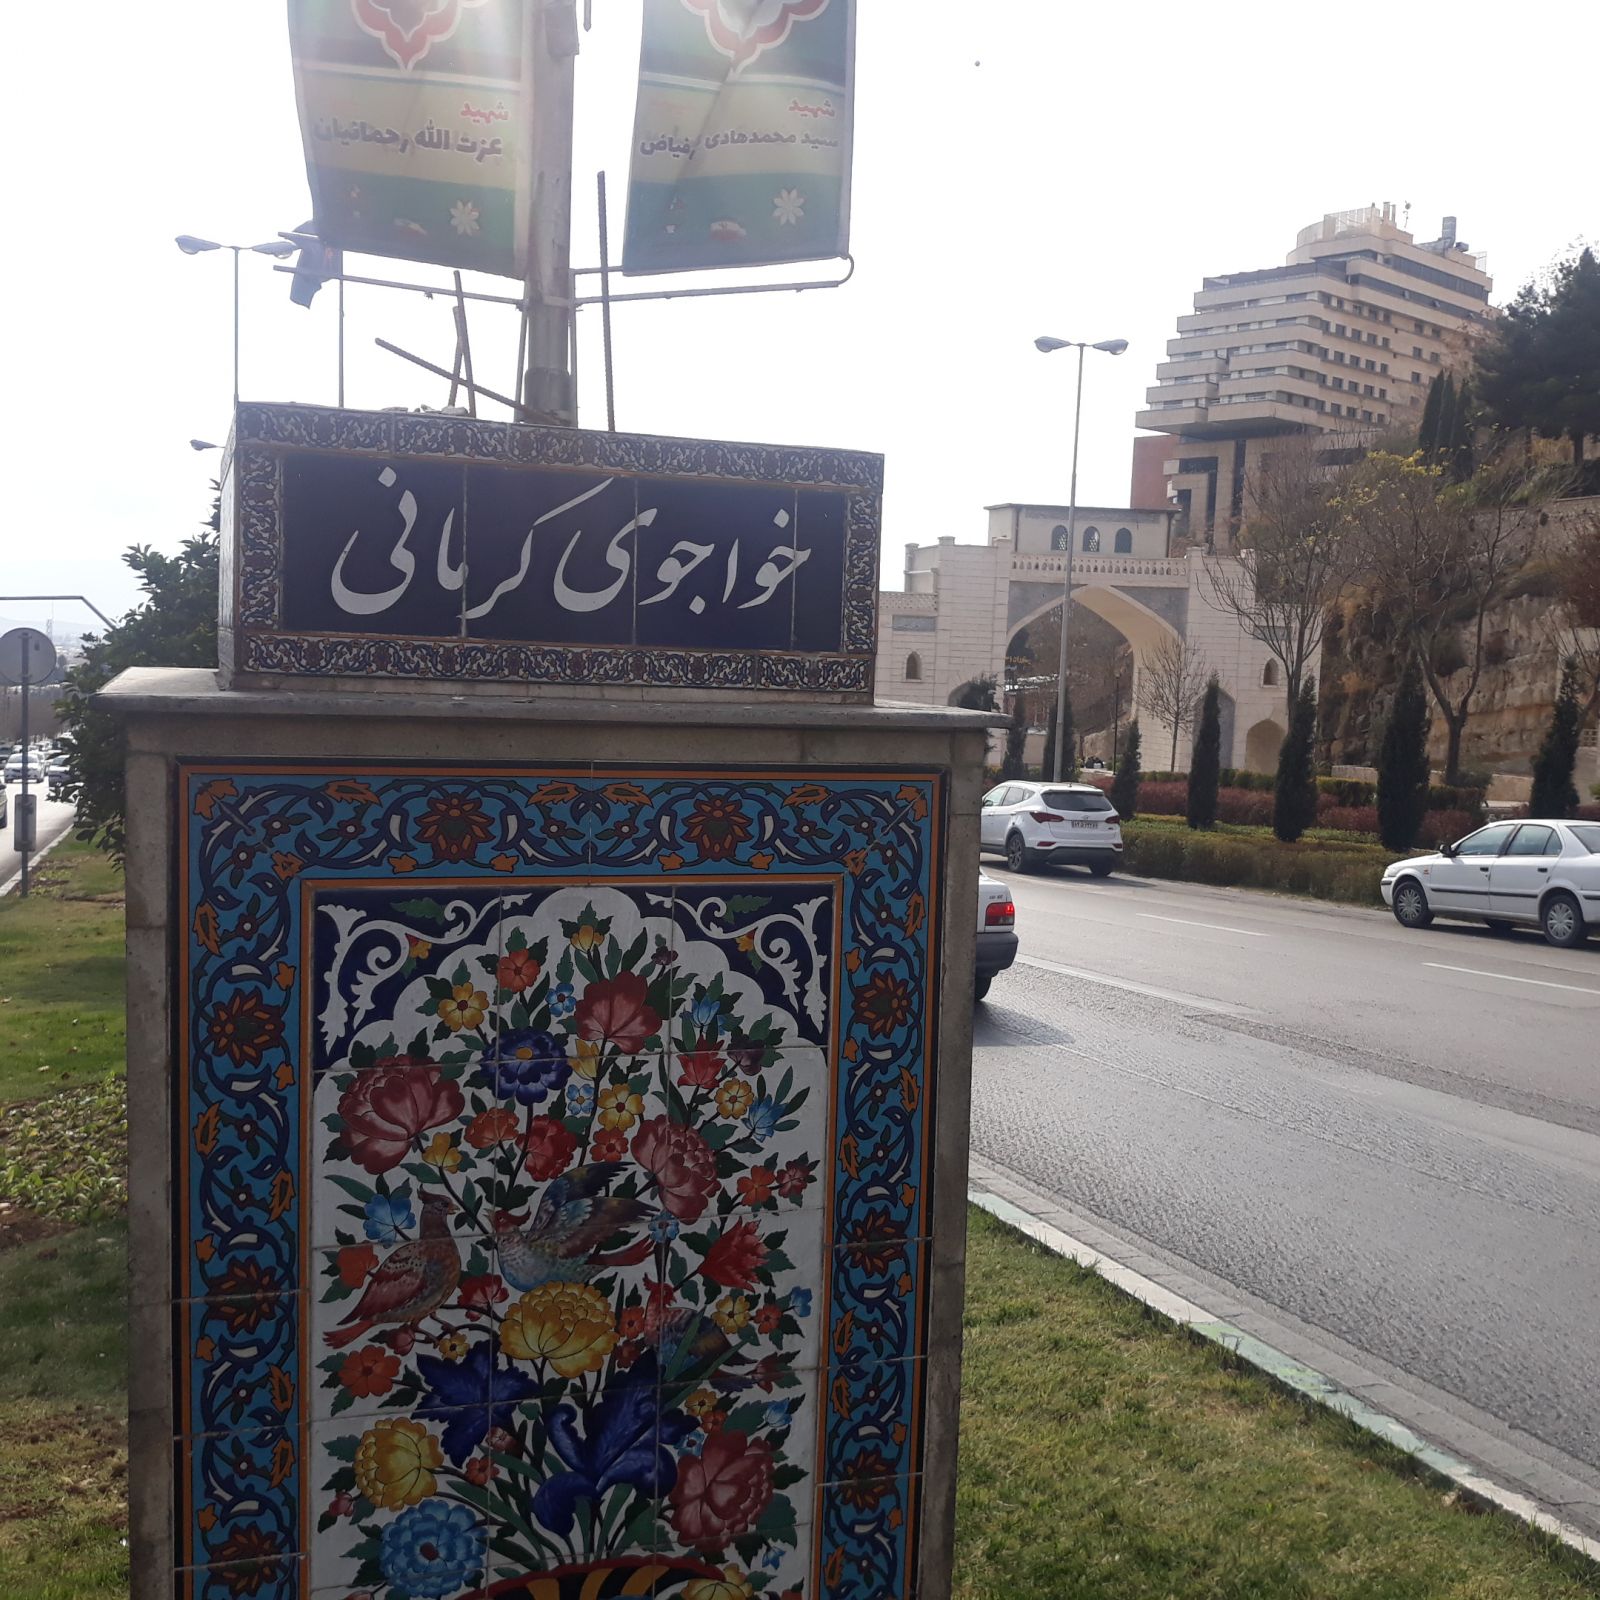 سرقت سردیس سعدی و خواجو در همسایگی دروازه قرآن شیراز